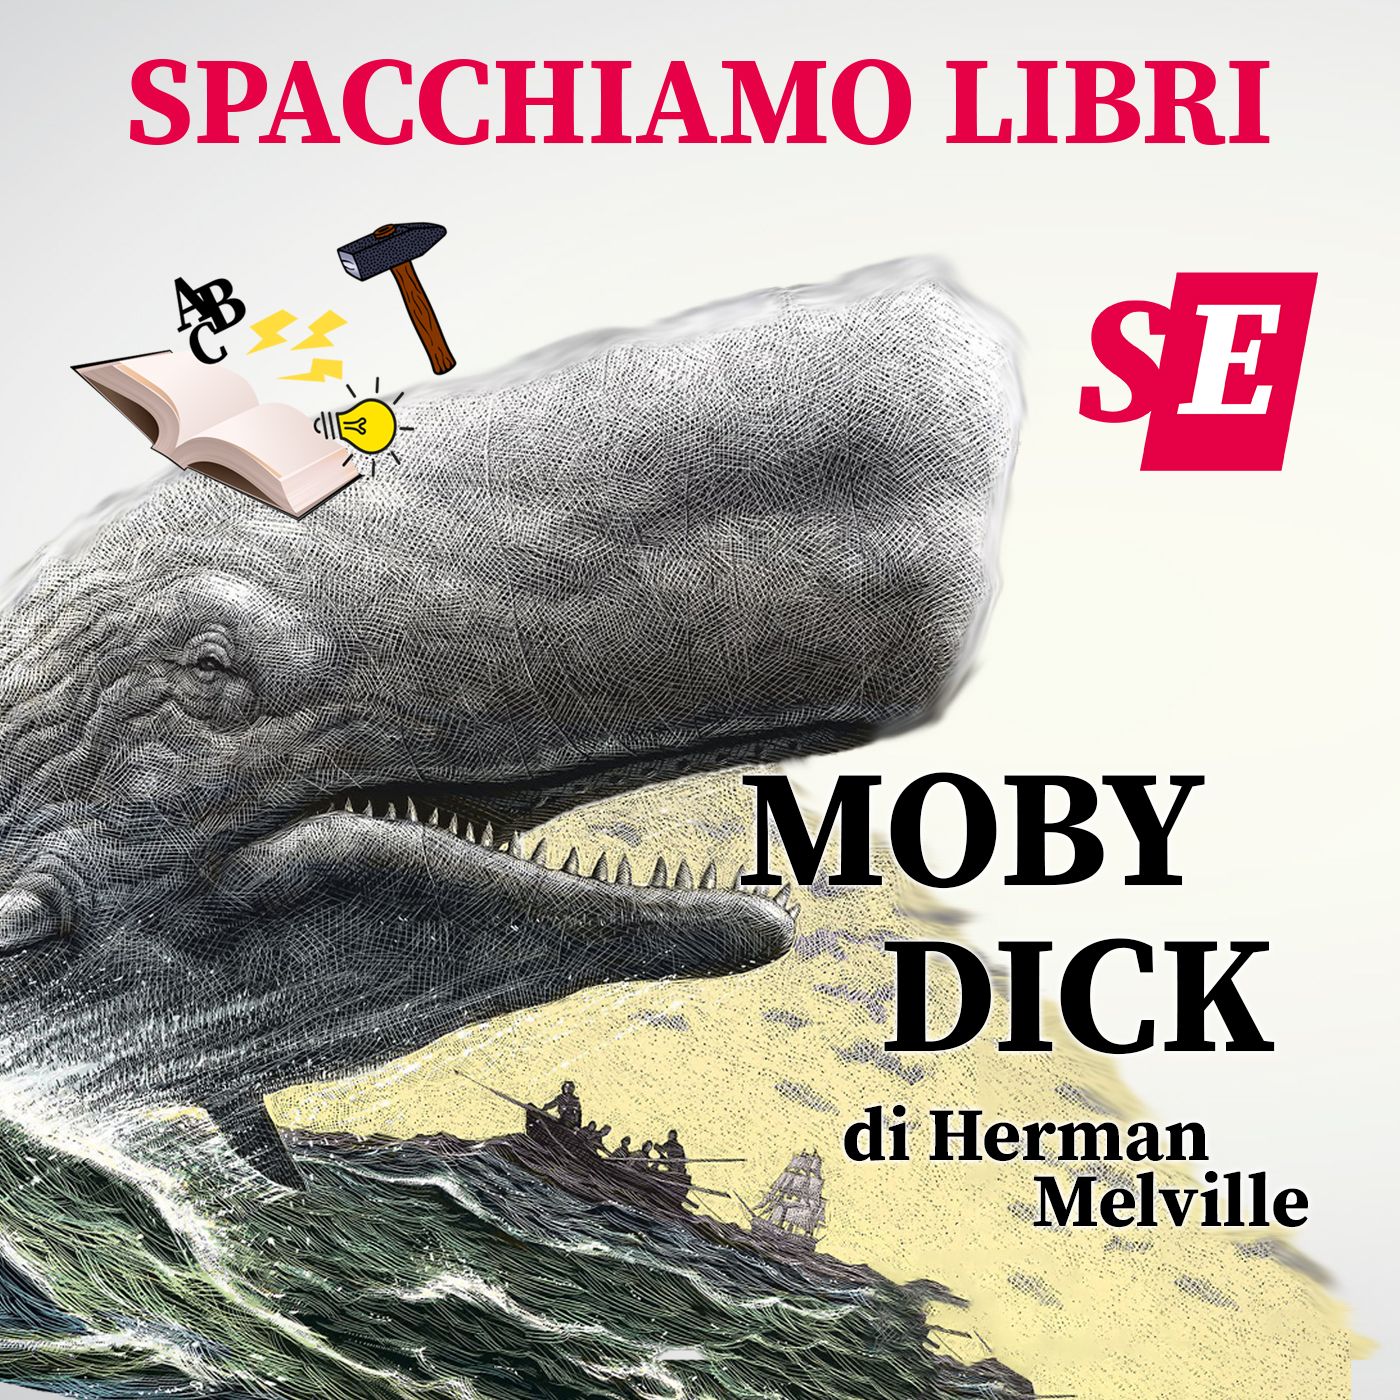 Spacchiamo... Moby Dick, con Carlo Martigli